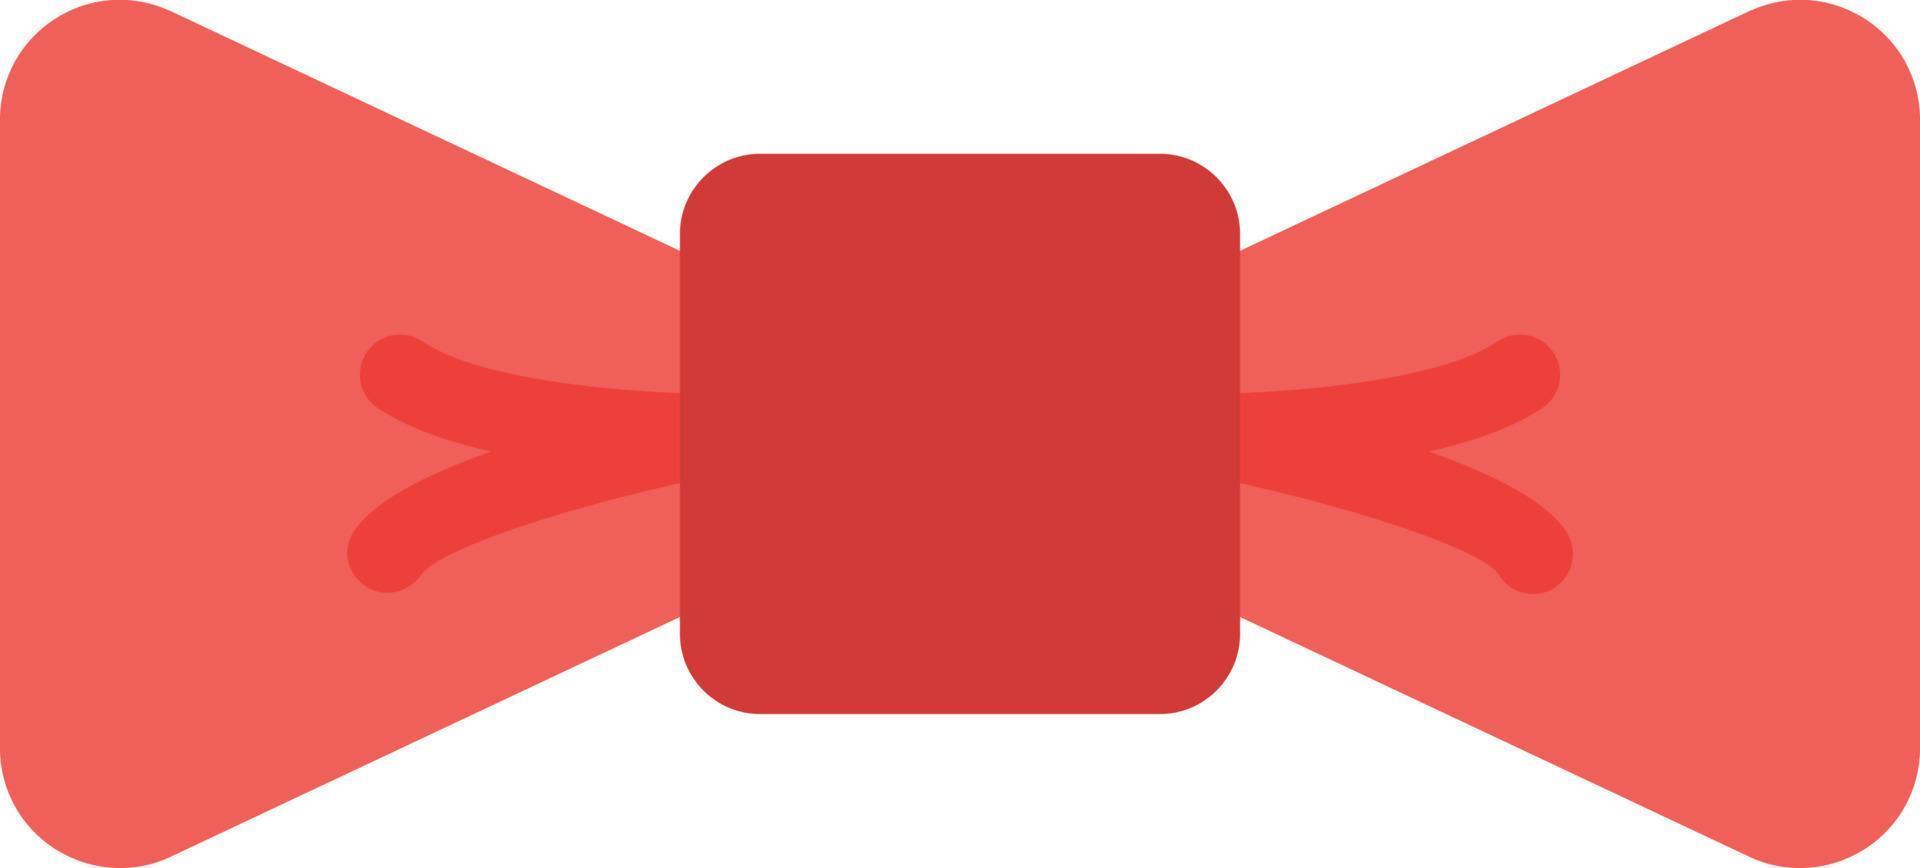 illustrazione vettoriale di prua su uno sfondo simboli di qualità premium. icone vettoriali per il concetto e la progettazione grafica.